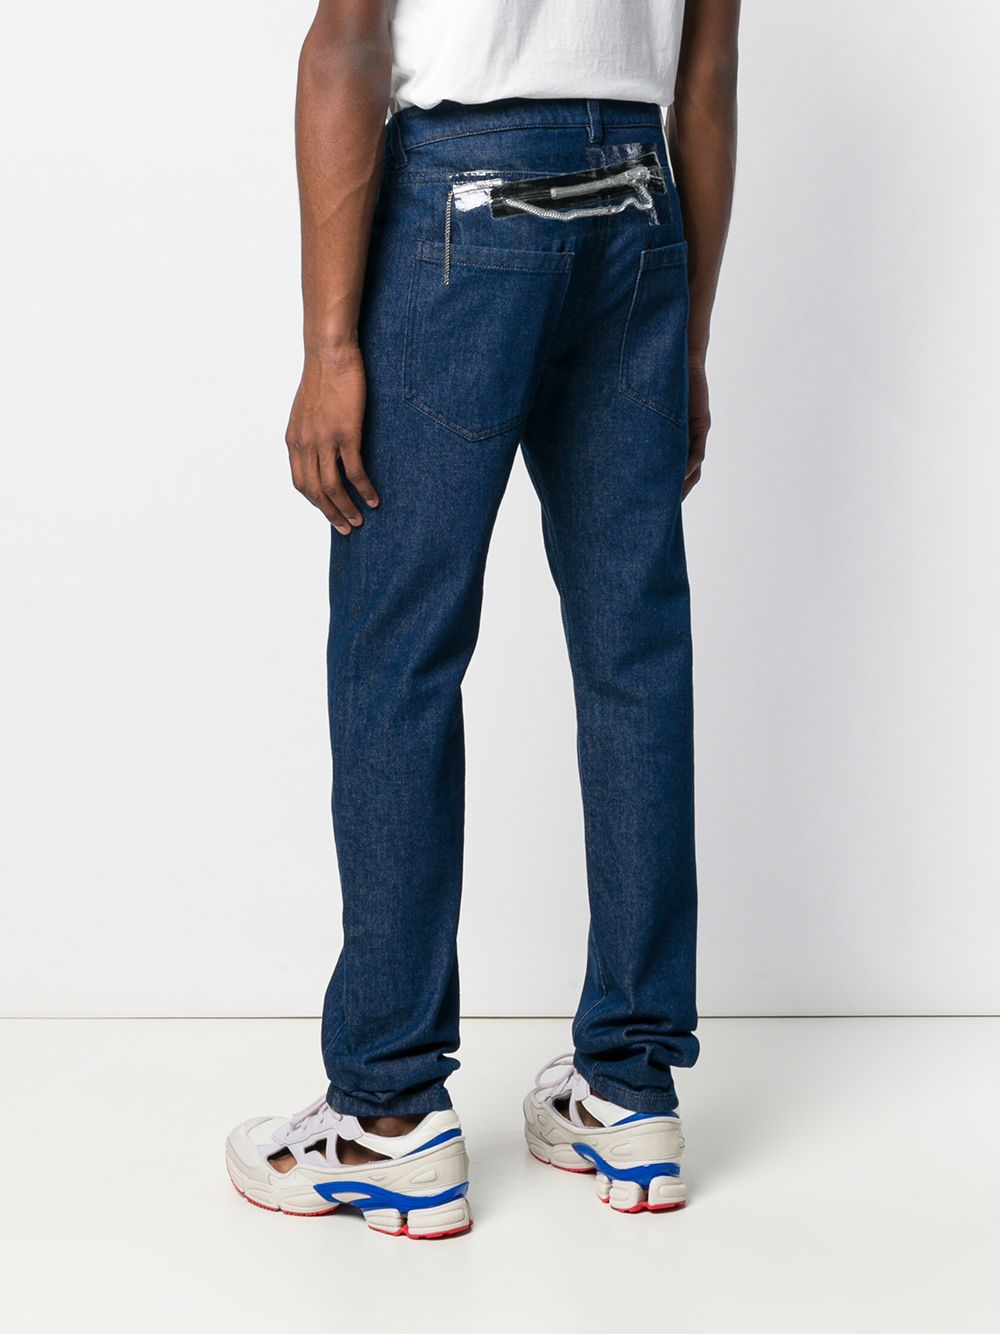 фото Raf Simons джинсы прямого кроя с цепью